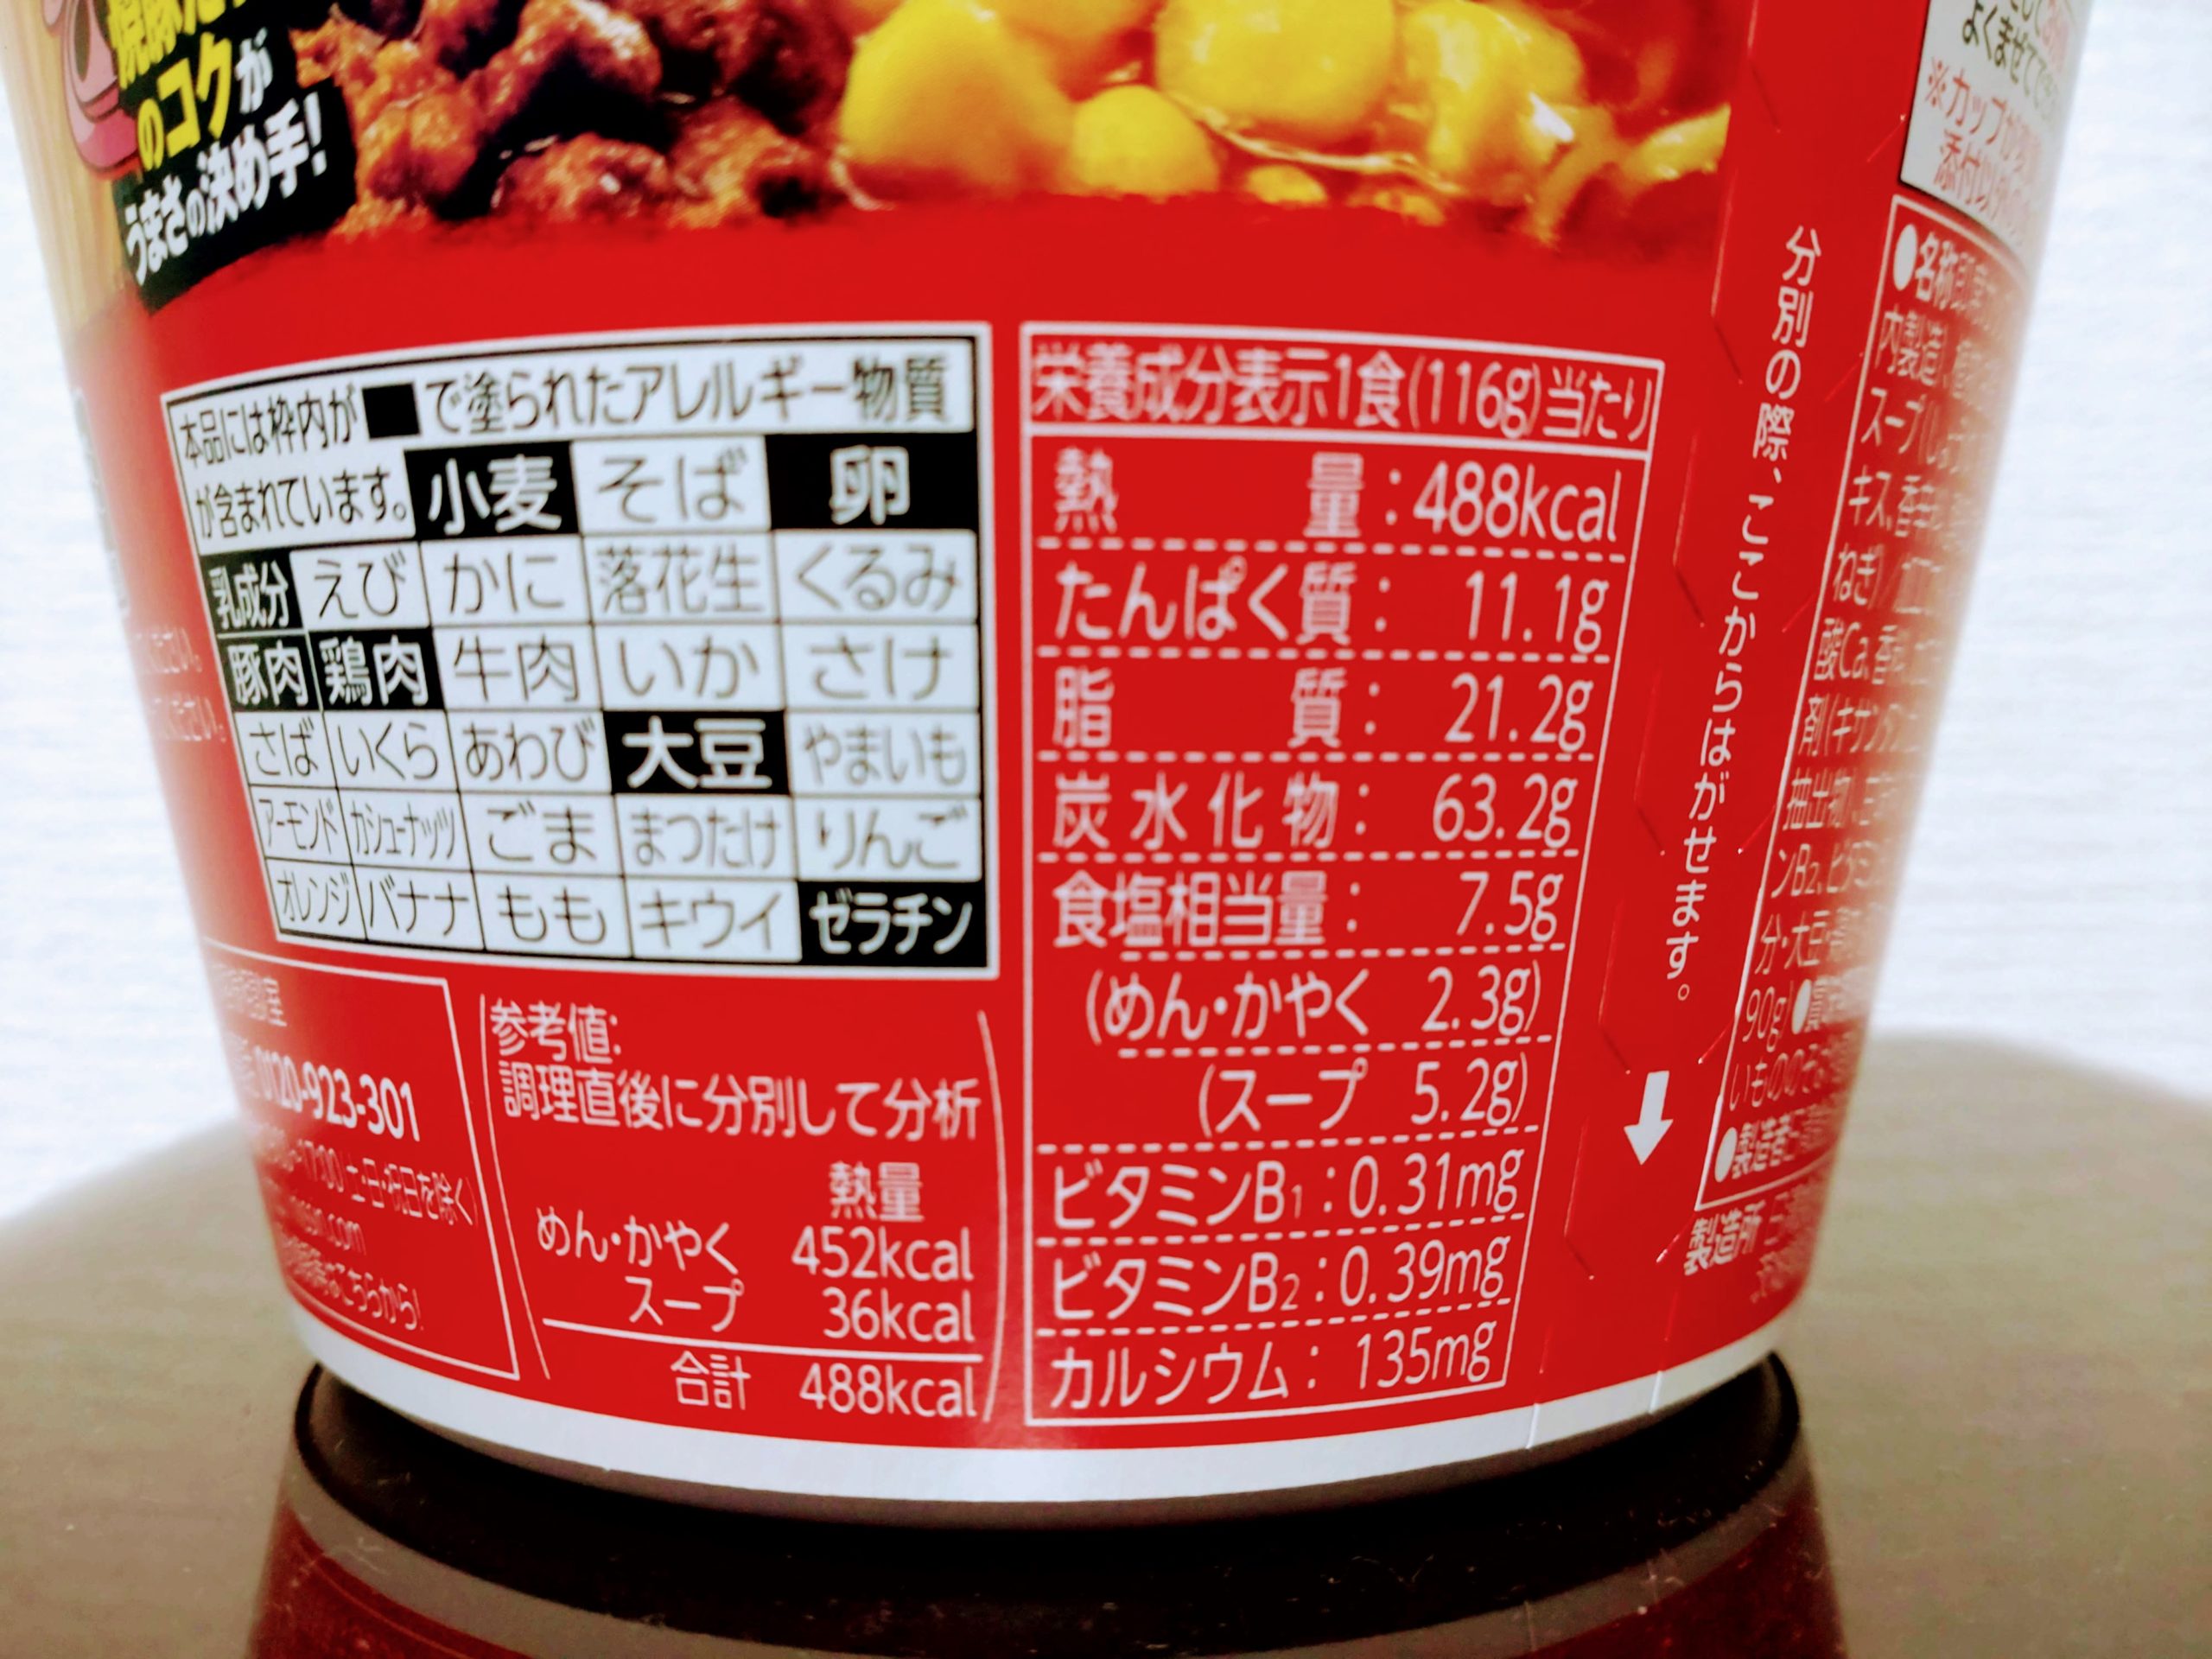 日清デカうま 濃厚コク旨醤油の栄養成分表示